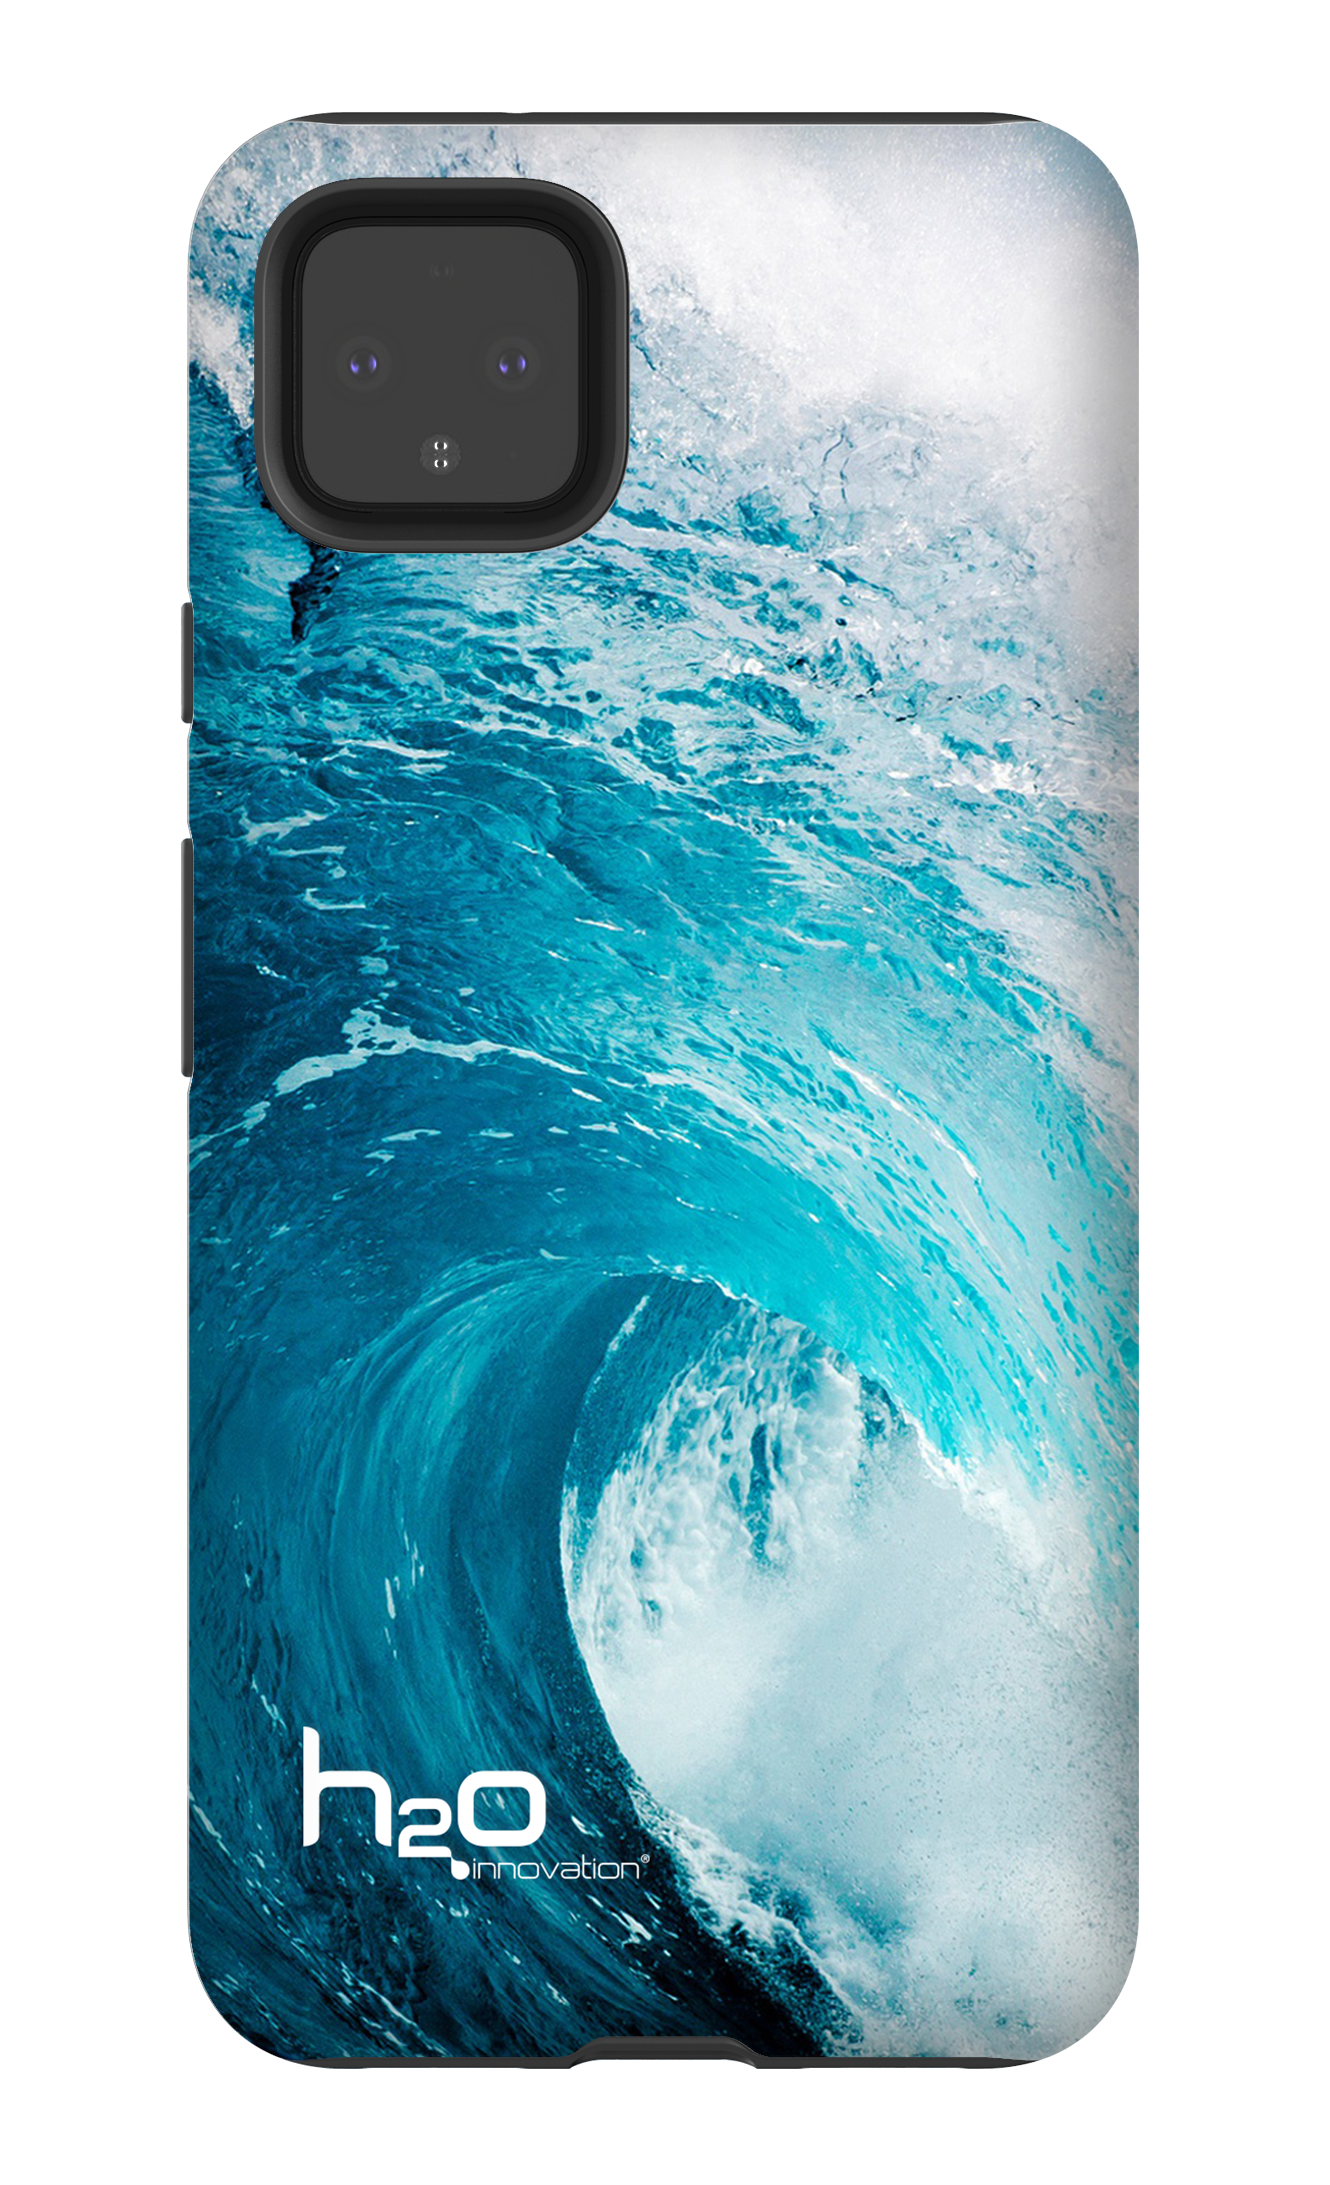 Wave by H2O - Google Pixel 4 XL